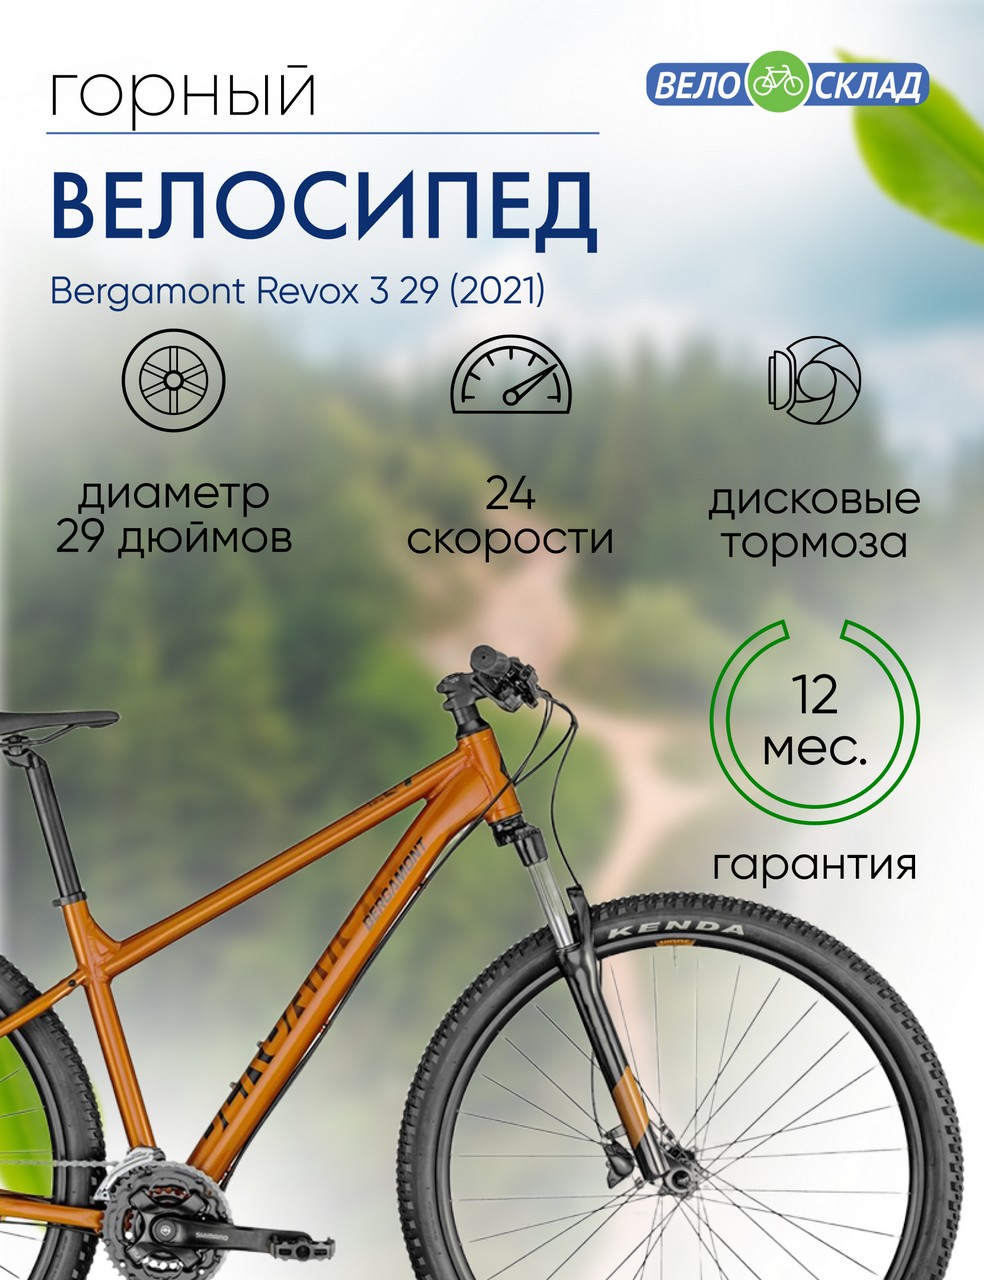 Горный велосипед Bergamont Revox 3 29, год 2021, цвет Оранжевый, ростовка 17.5